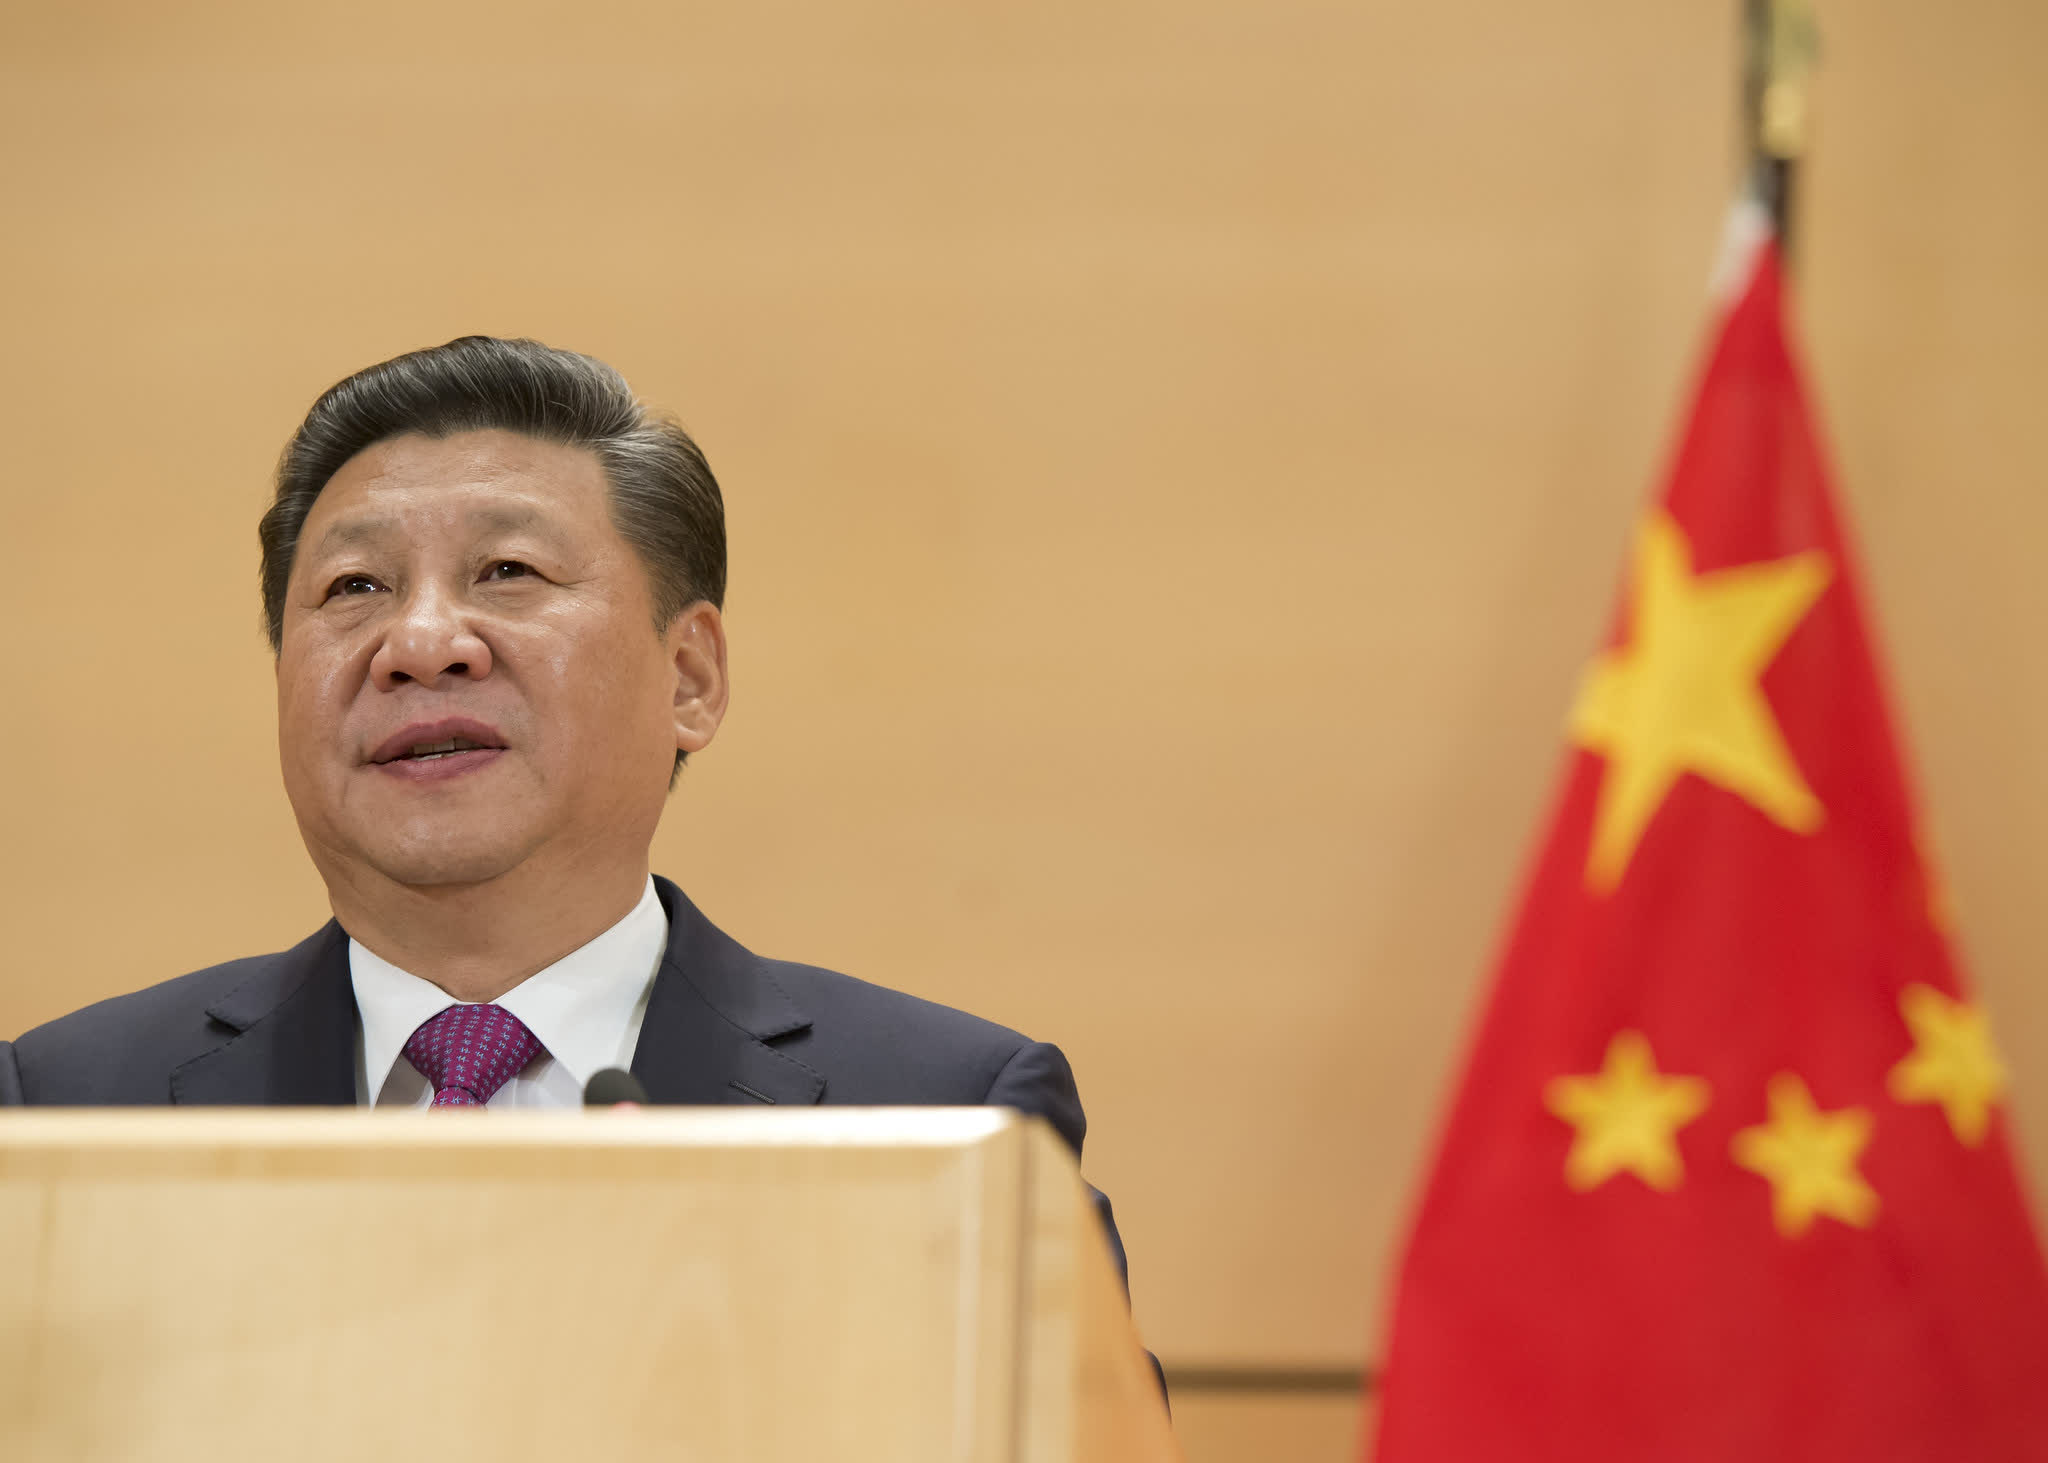 China está decidida a avanzar en su tecnología a pesar de las restricciones lideradas por Estados Unidos, dice Xi Jinping al primer ministro holandés